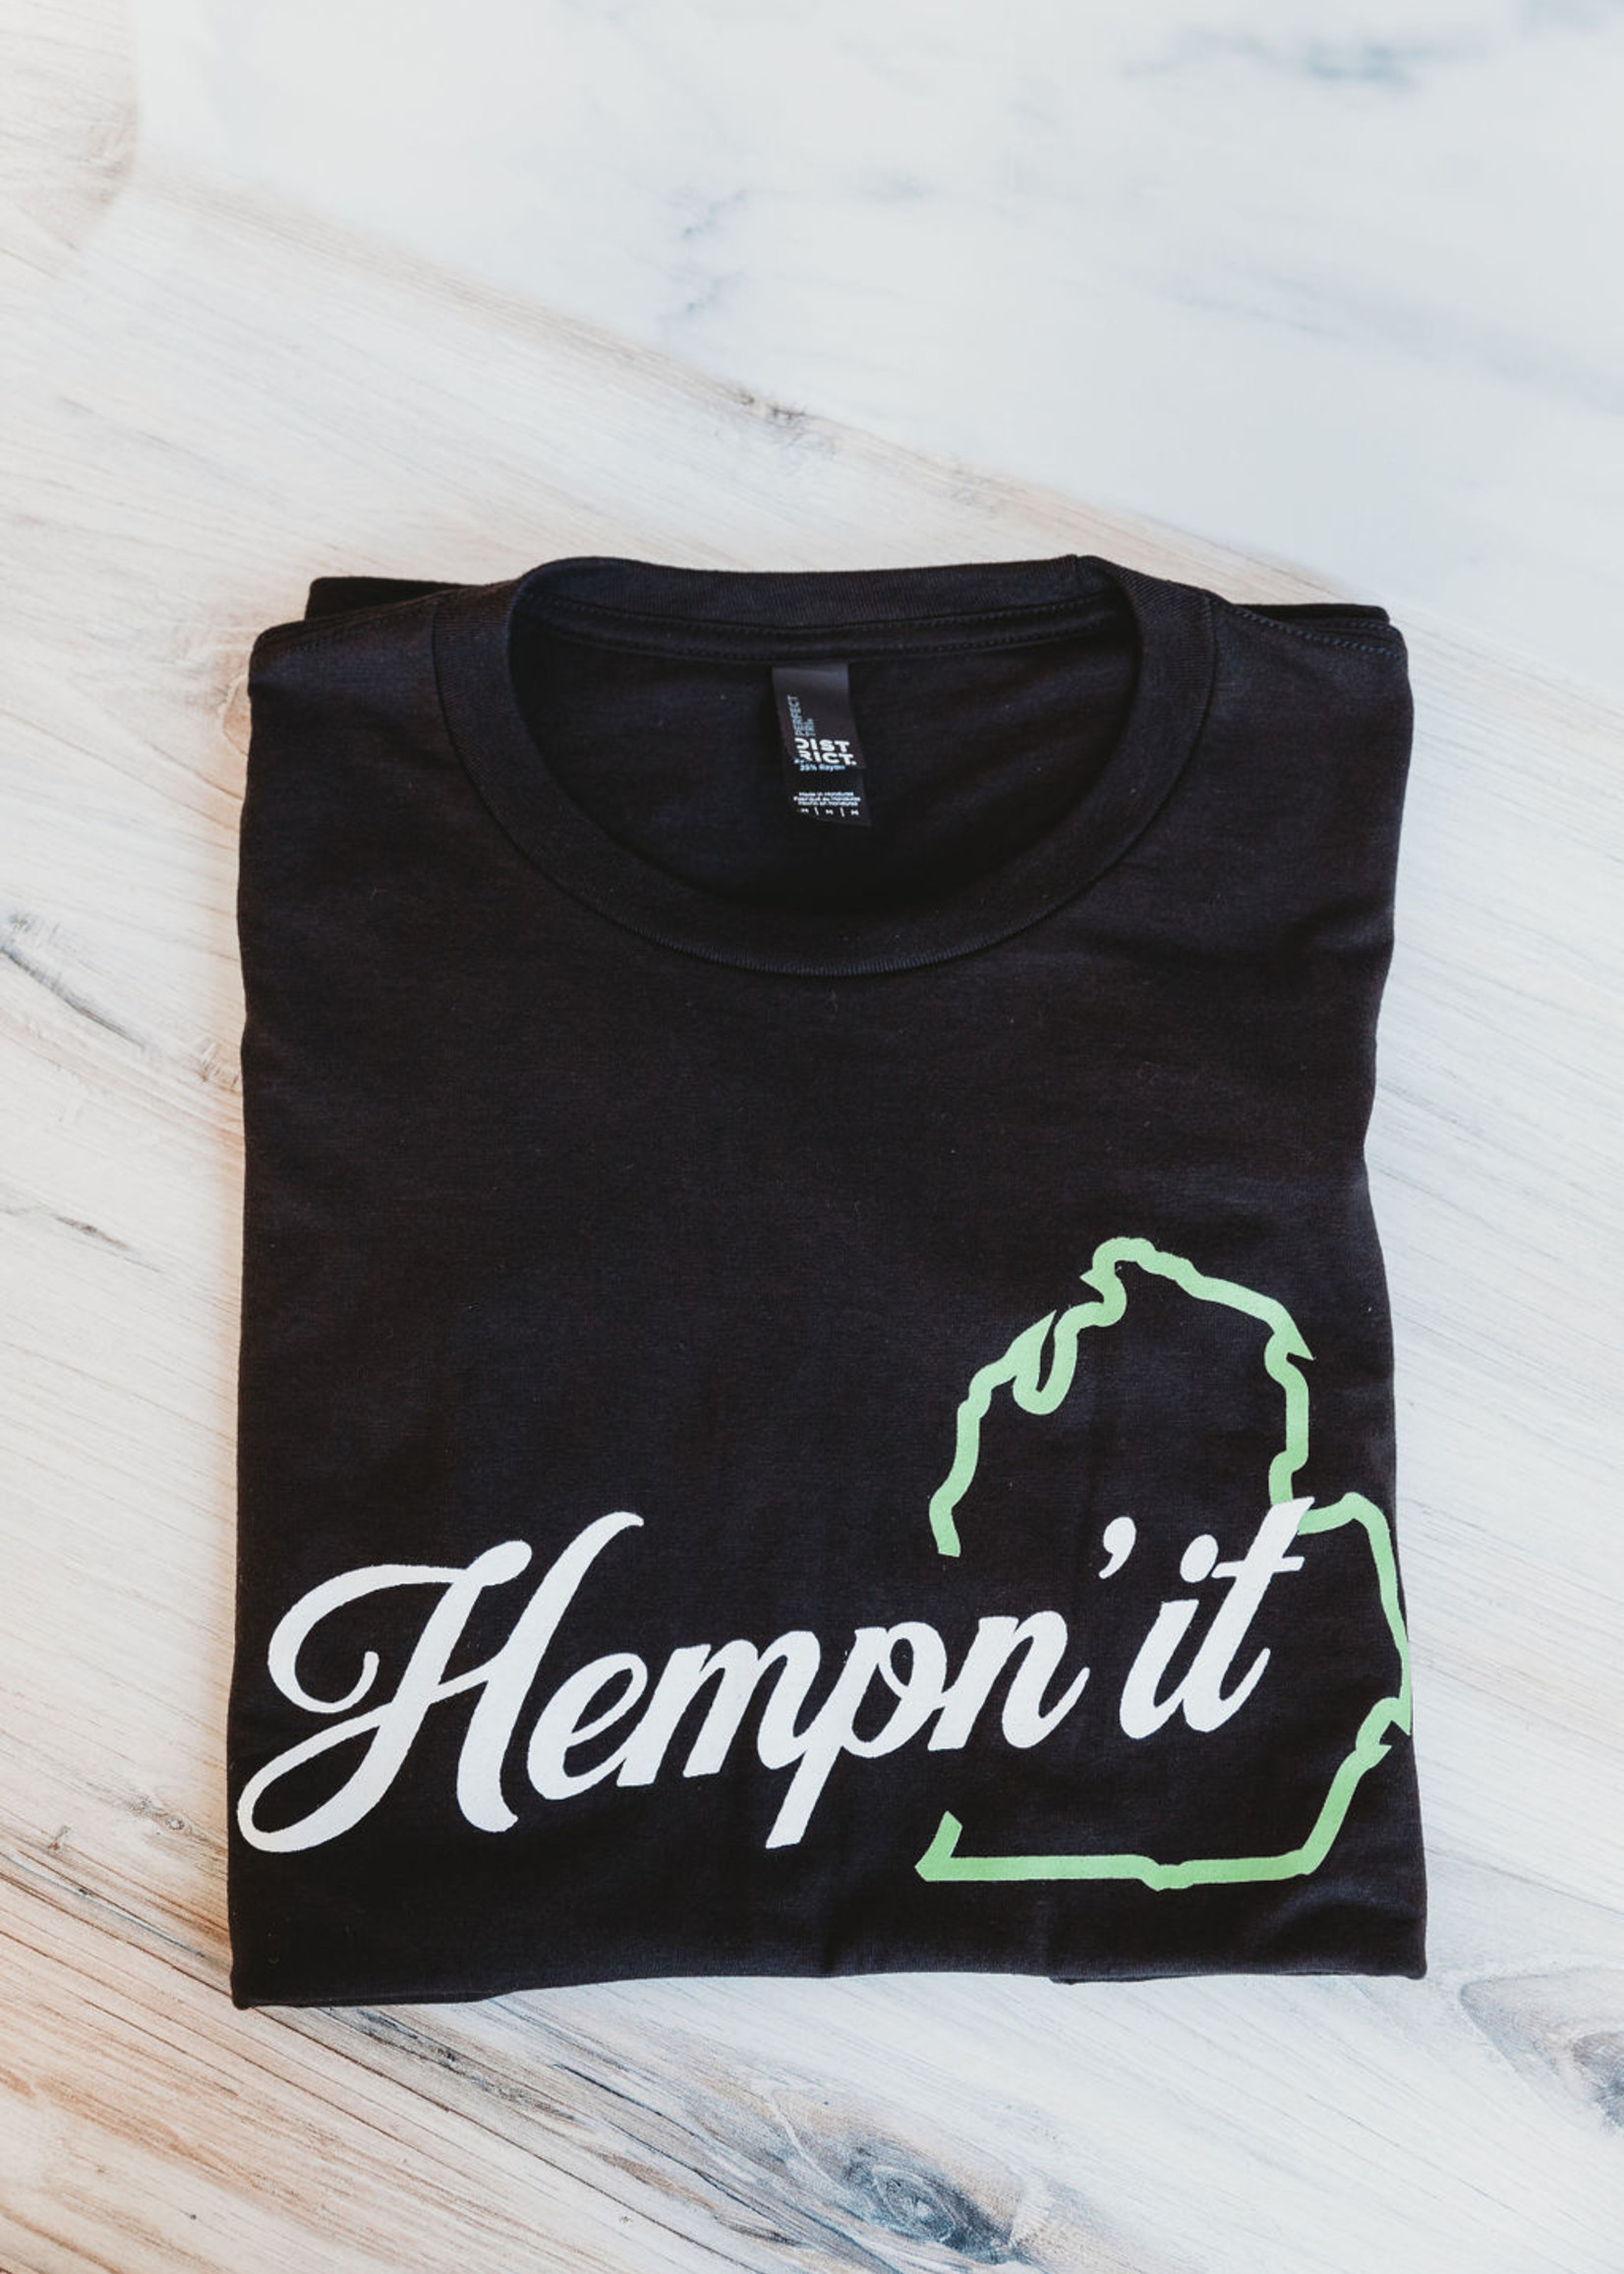 BC Hemp Co. Hempn'it T-shirt